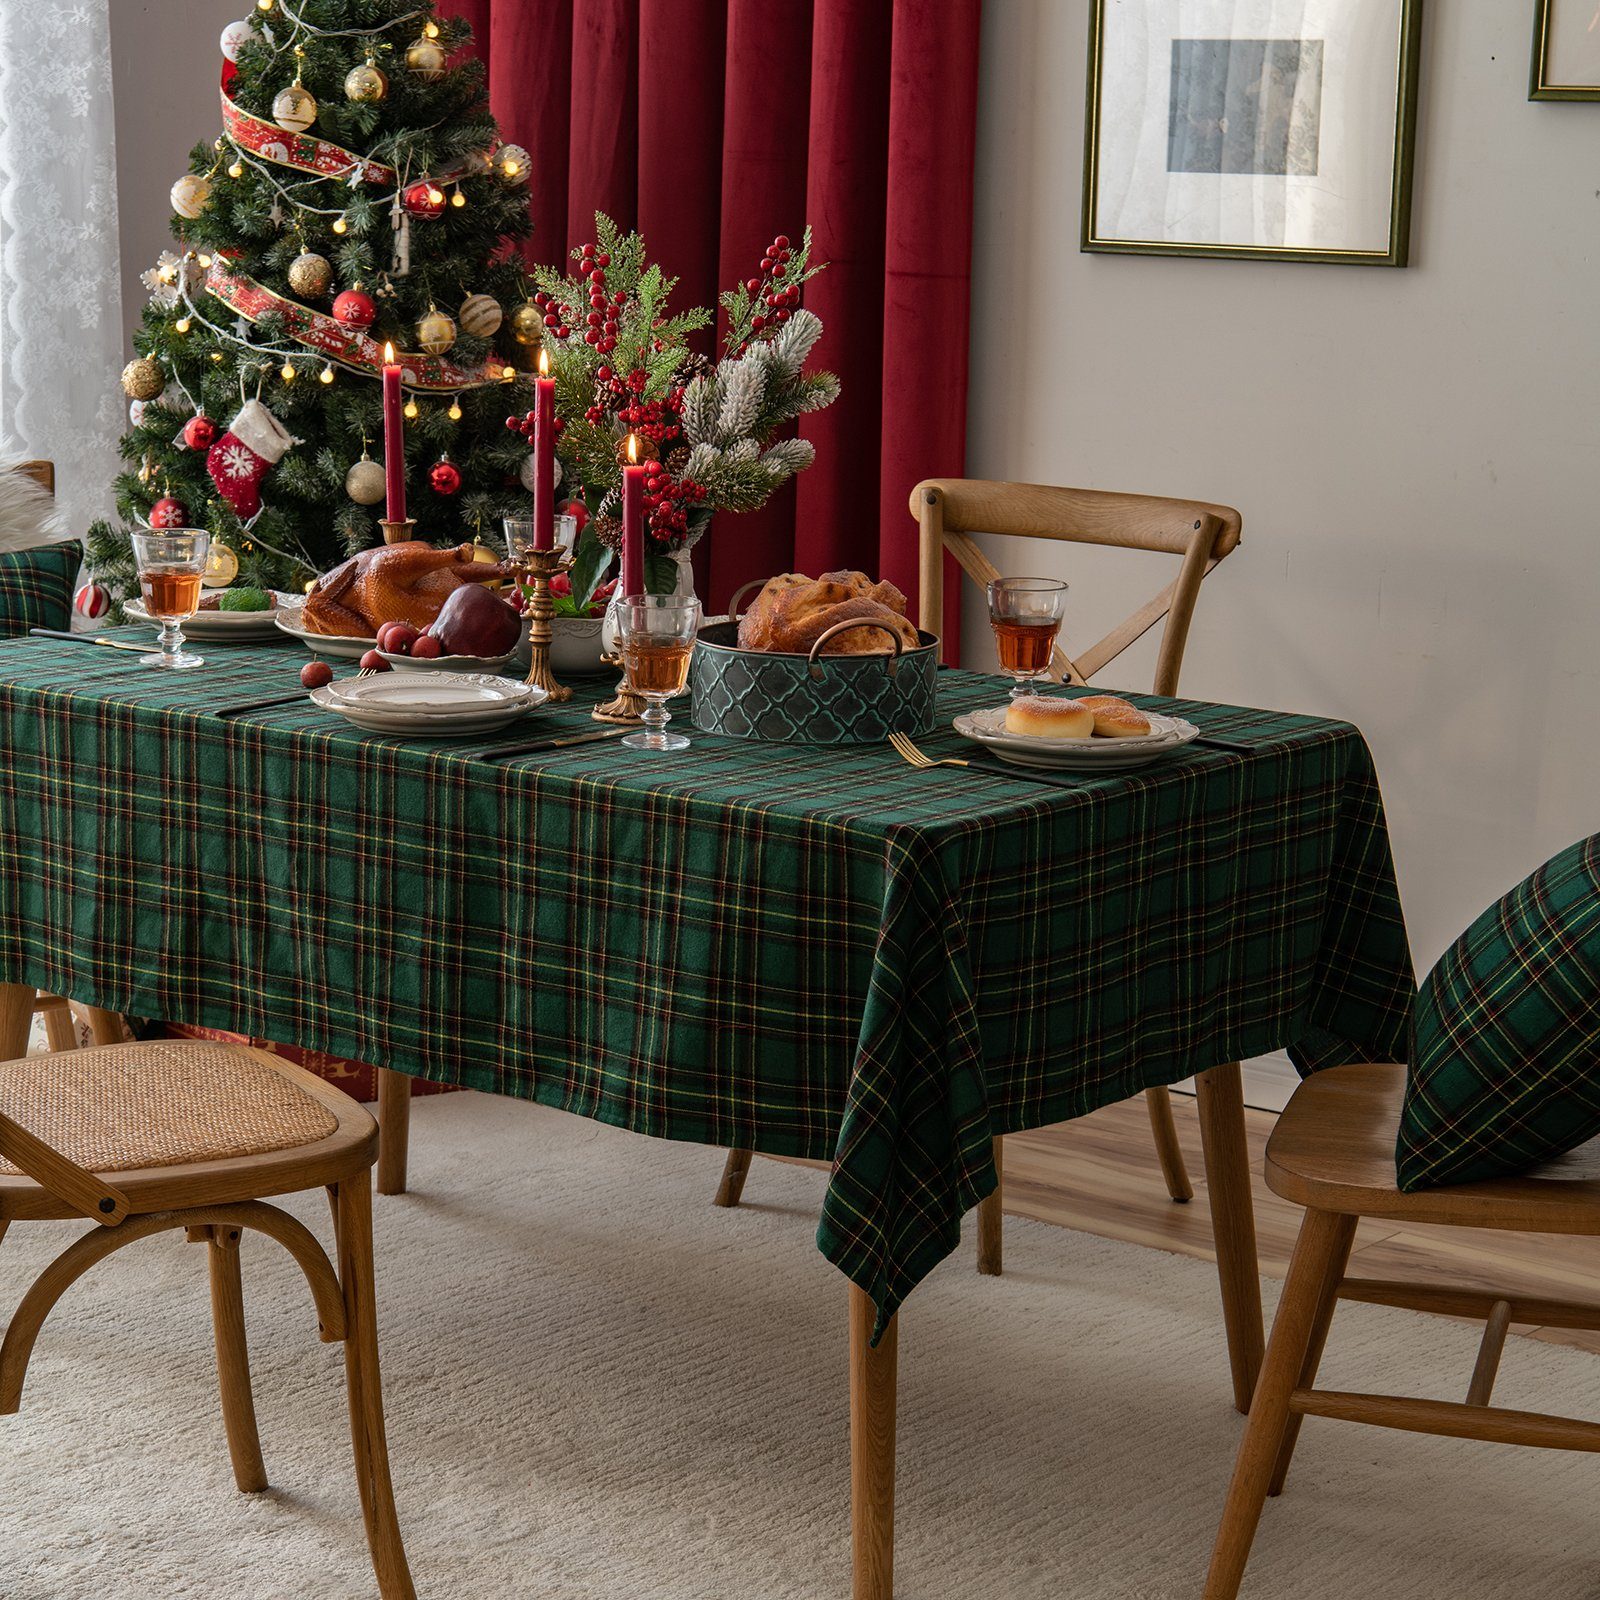 BTTO Tischdecke Weihnachten Tischdecke, Karierte Tischdecke Quadratisch,  Weihnachtstischdecke für Weihnachts Party Dekoration